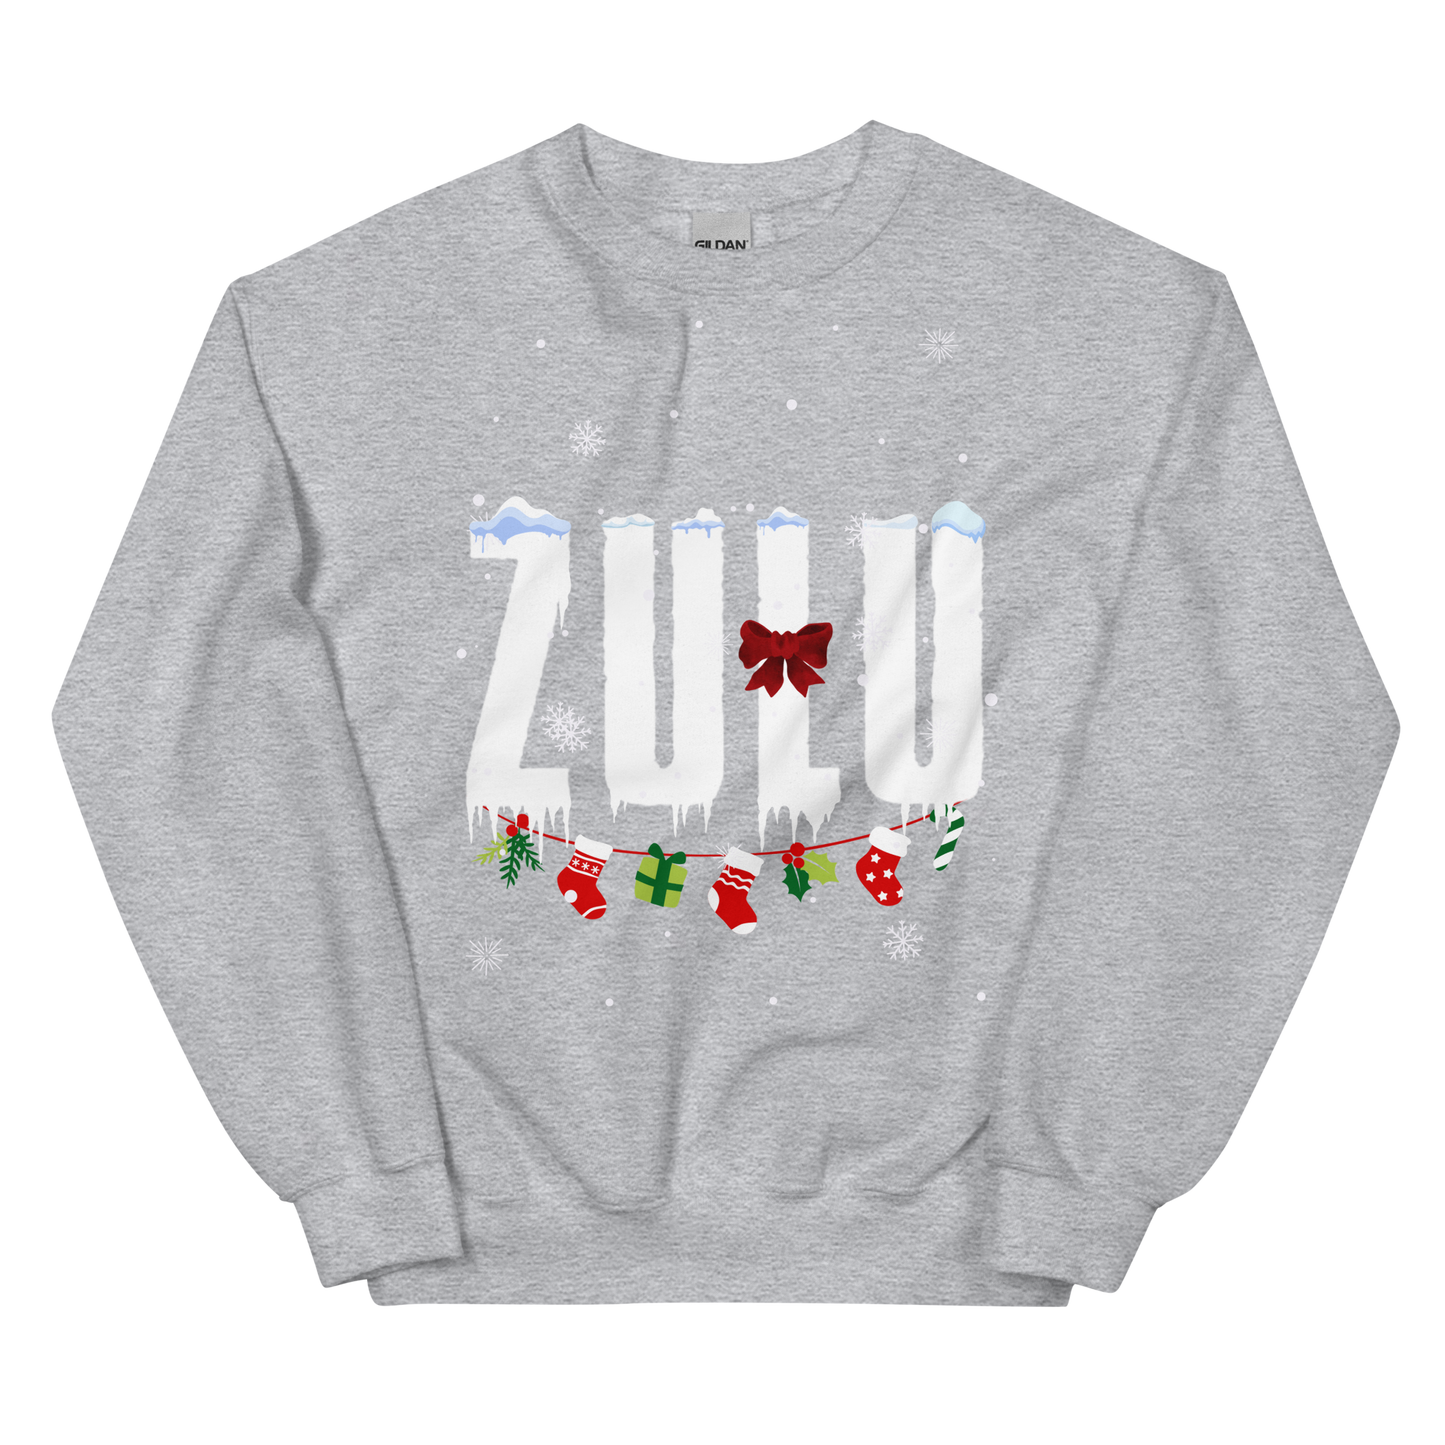 ZULU (Festive Jumper)